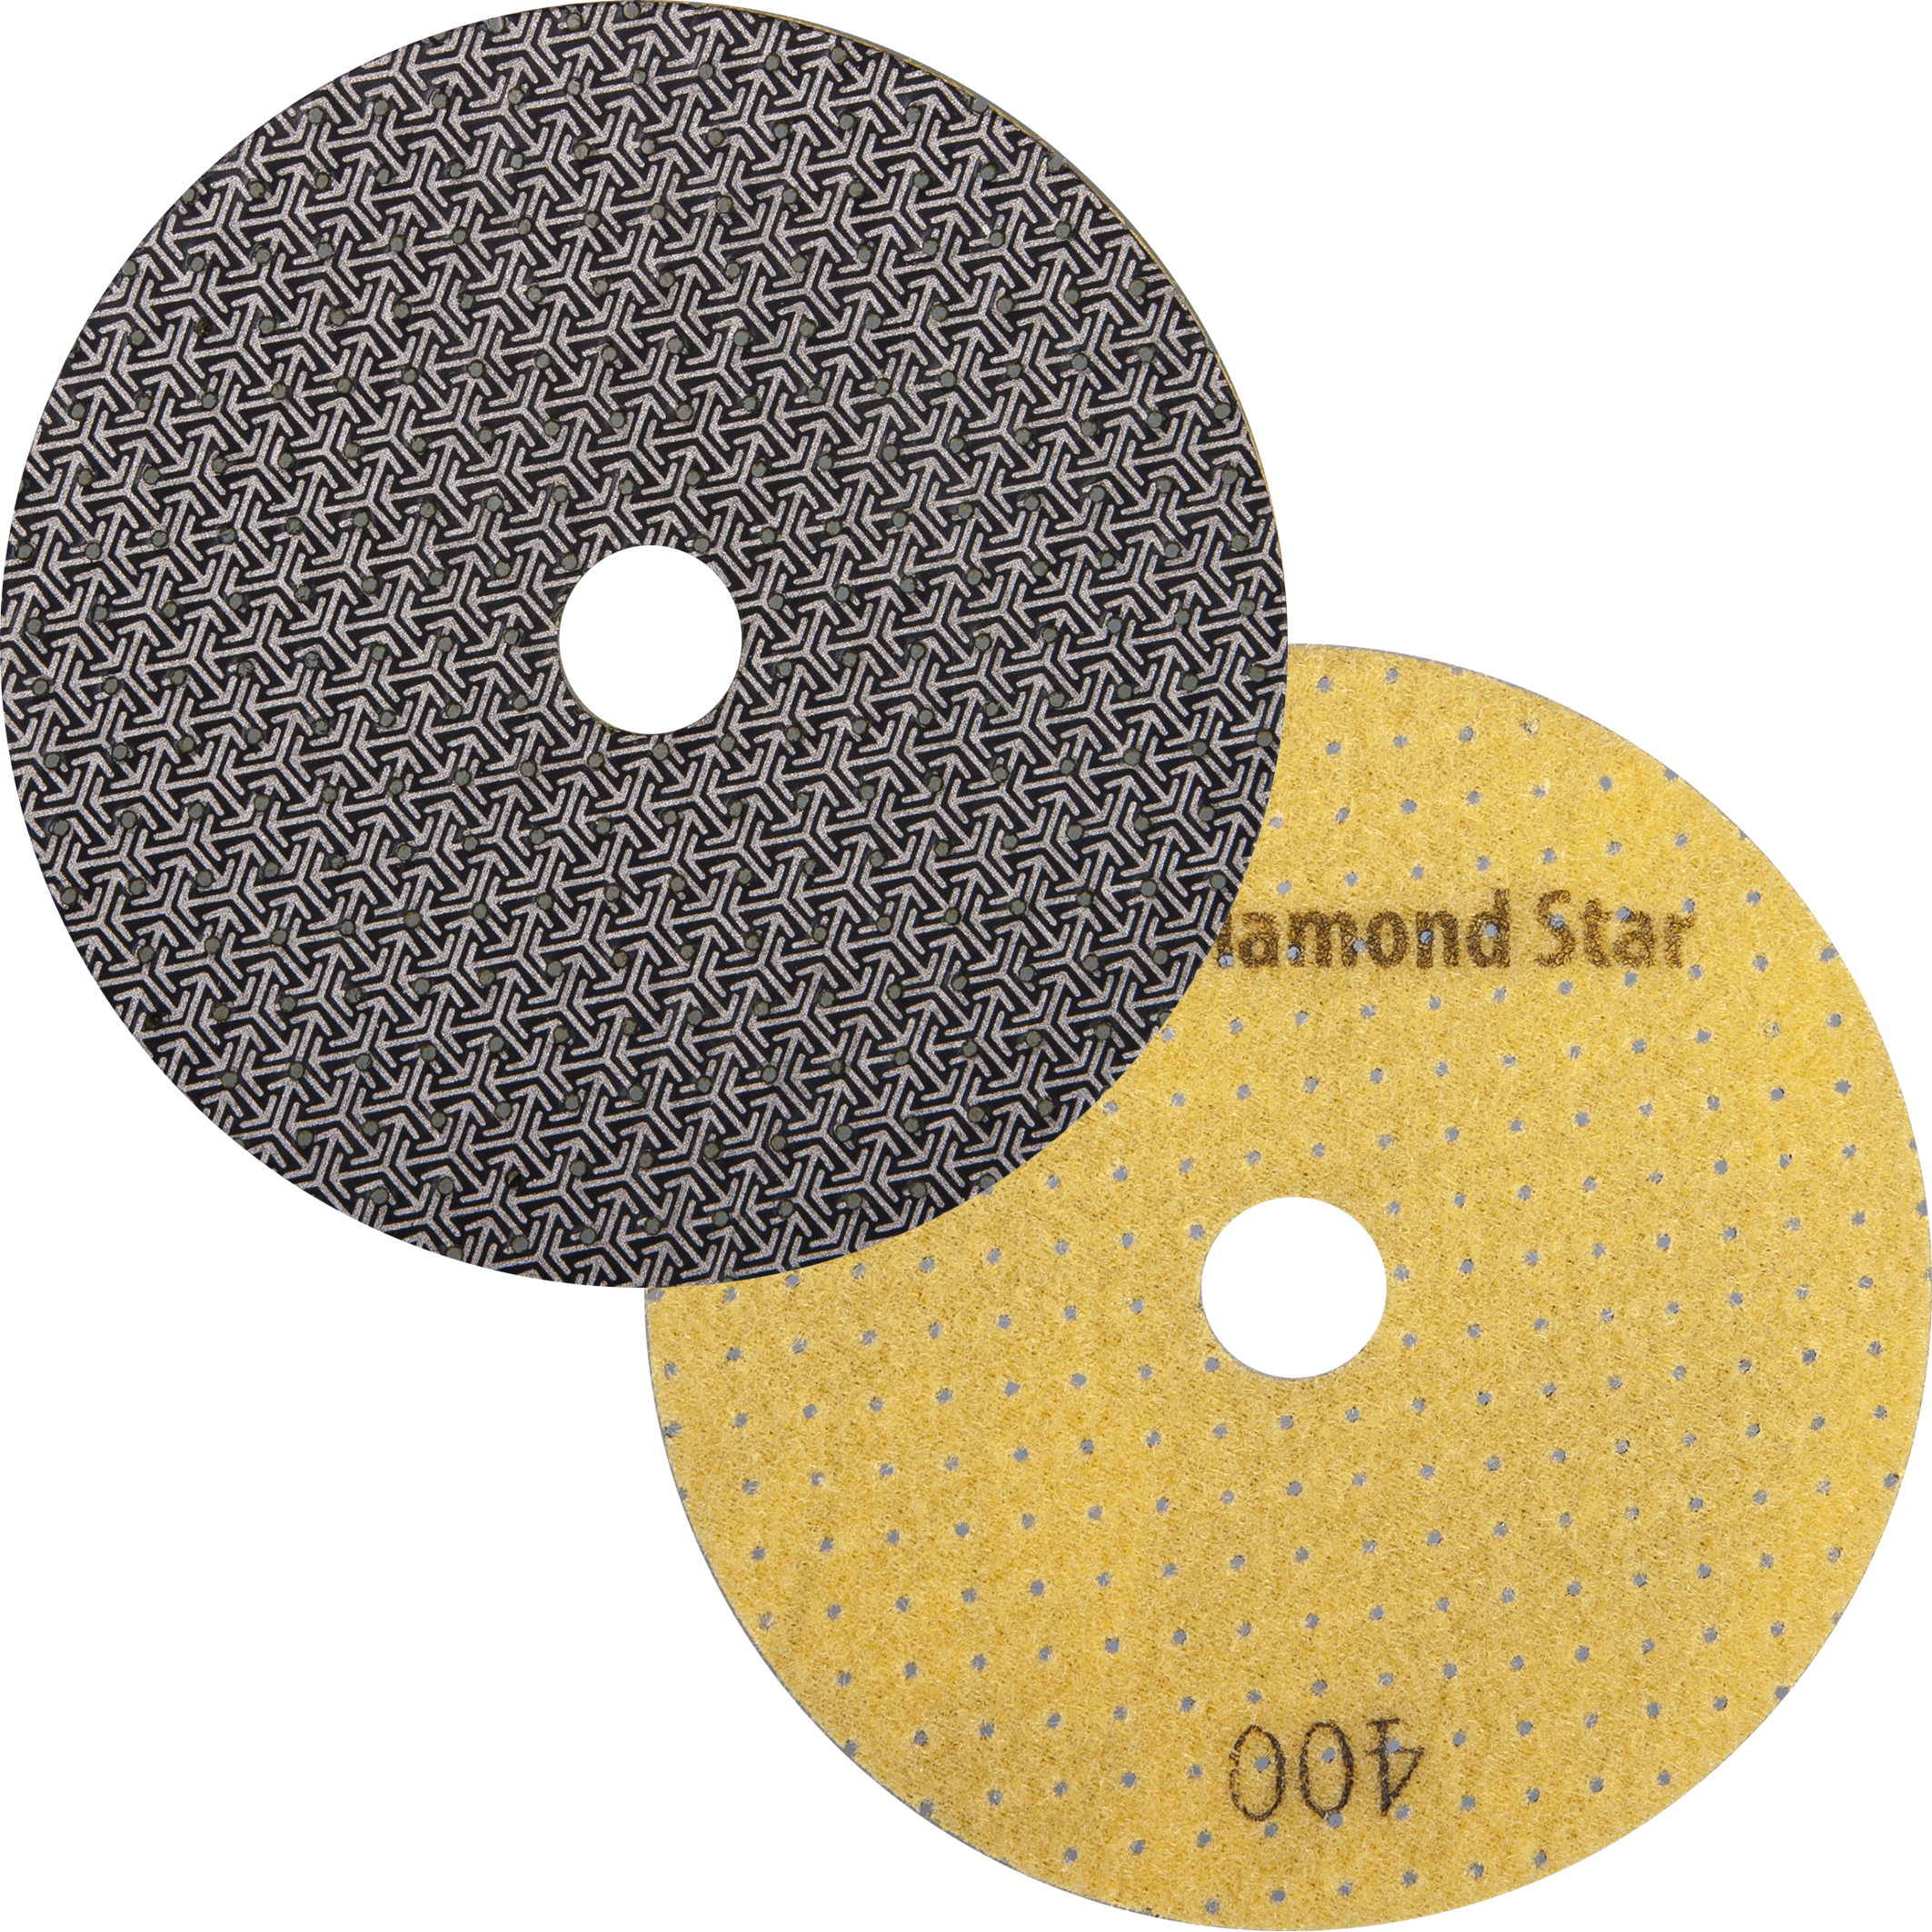 Schleifbelag Diamond Star ø 136 mm | Korn 400